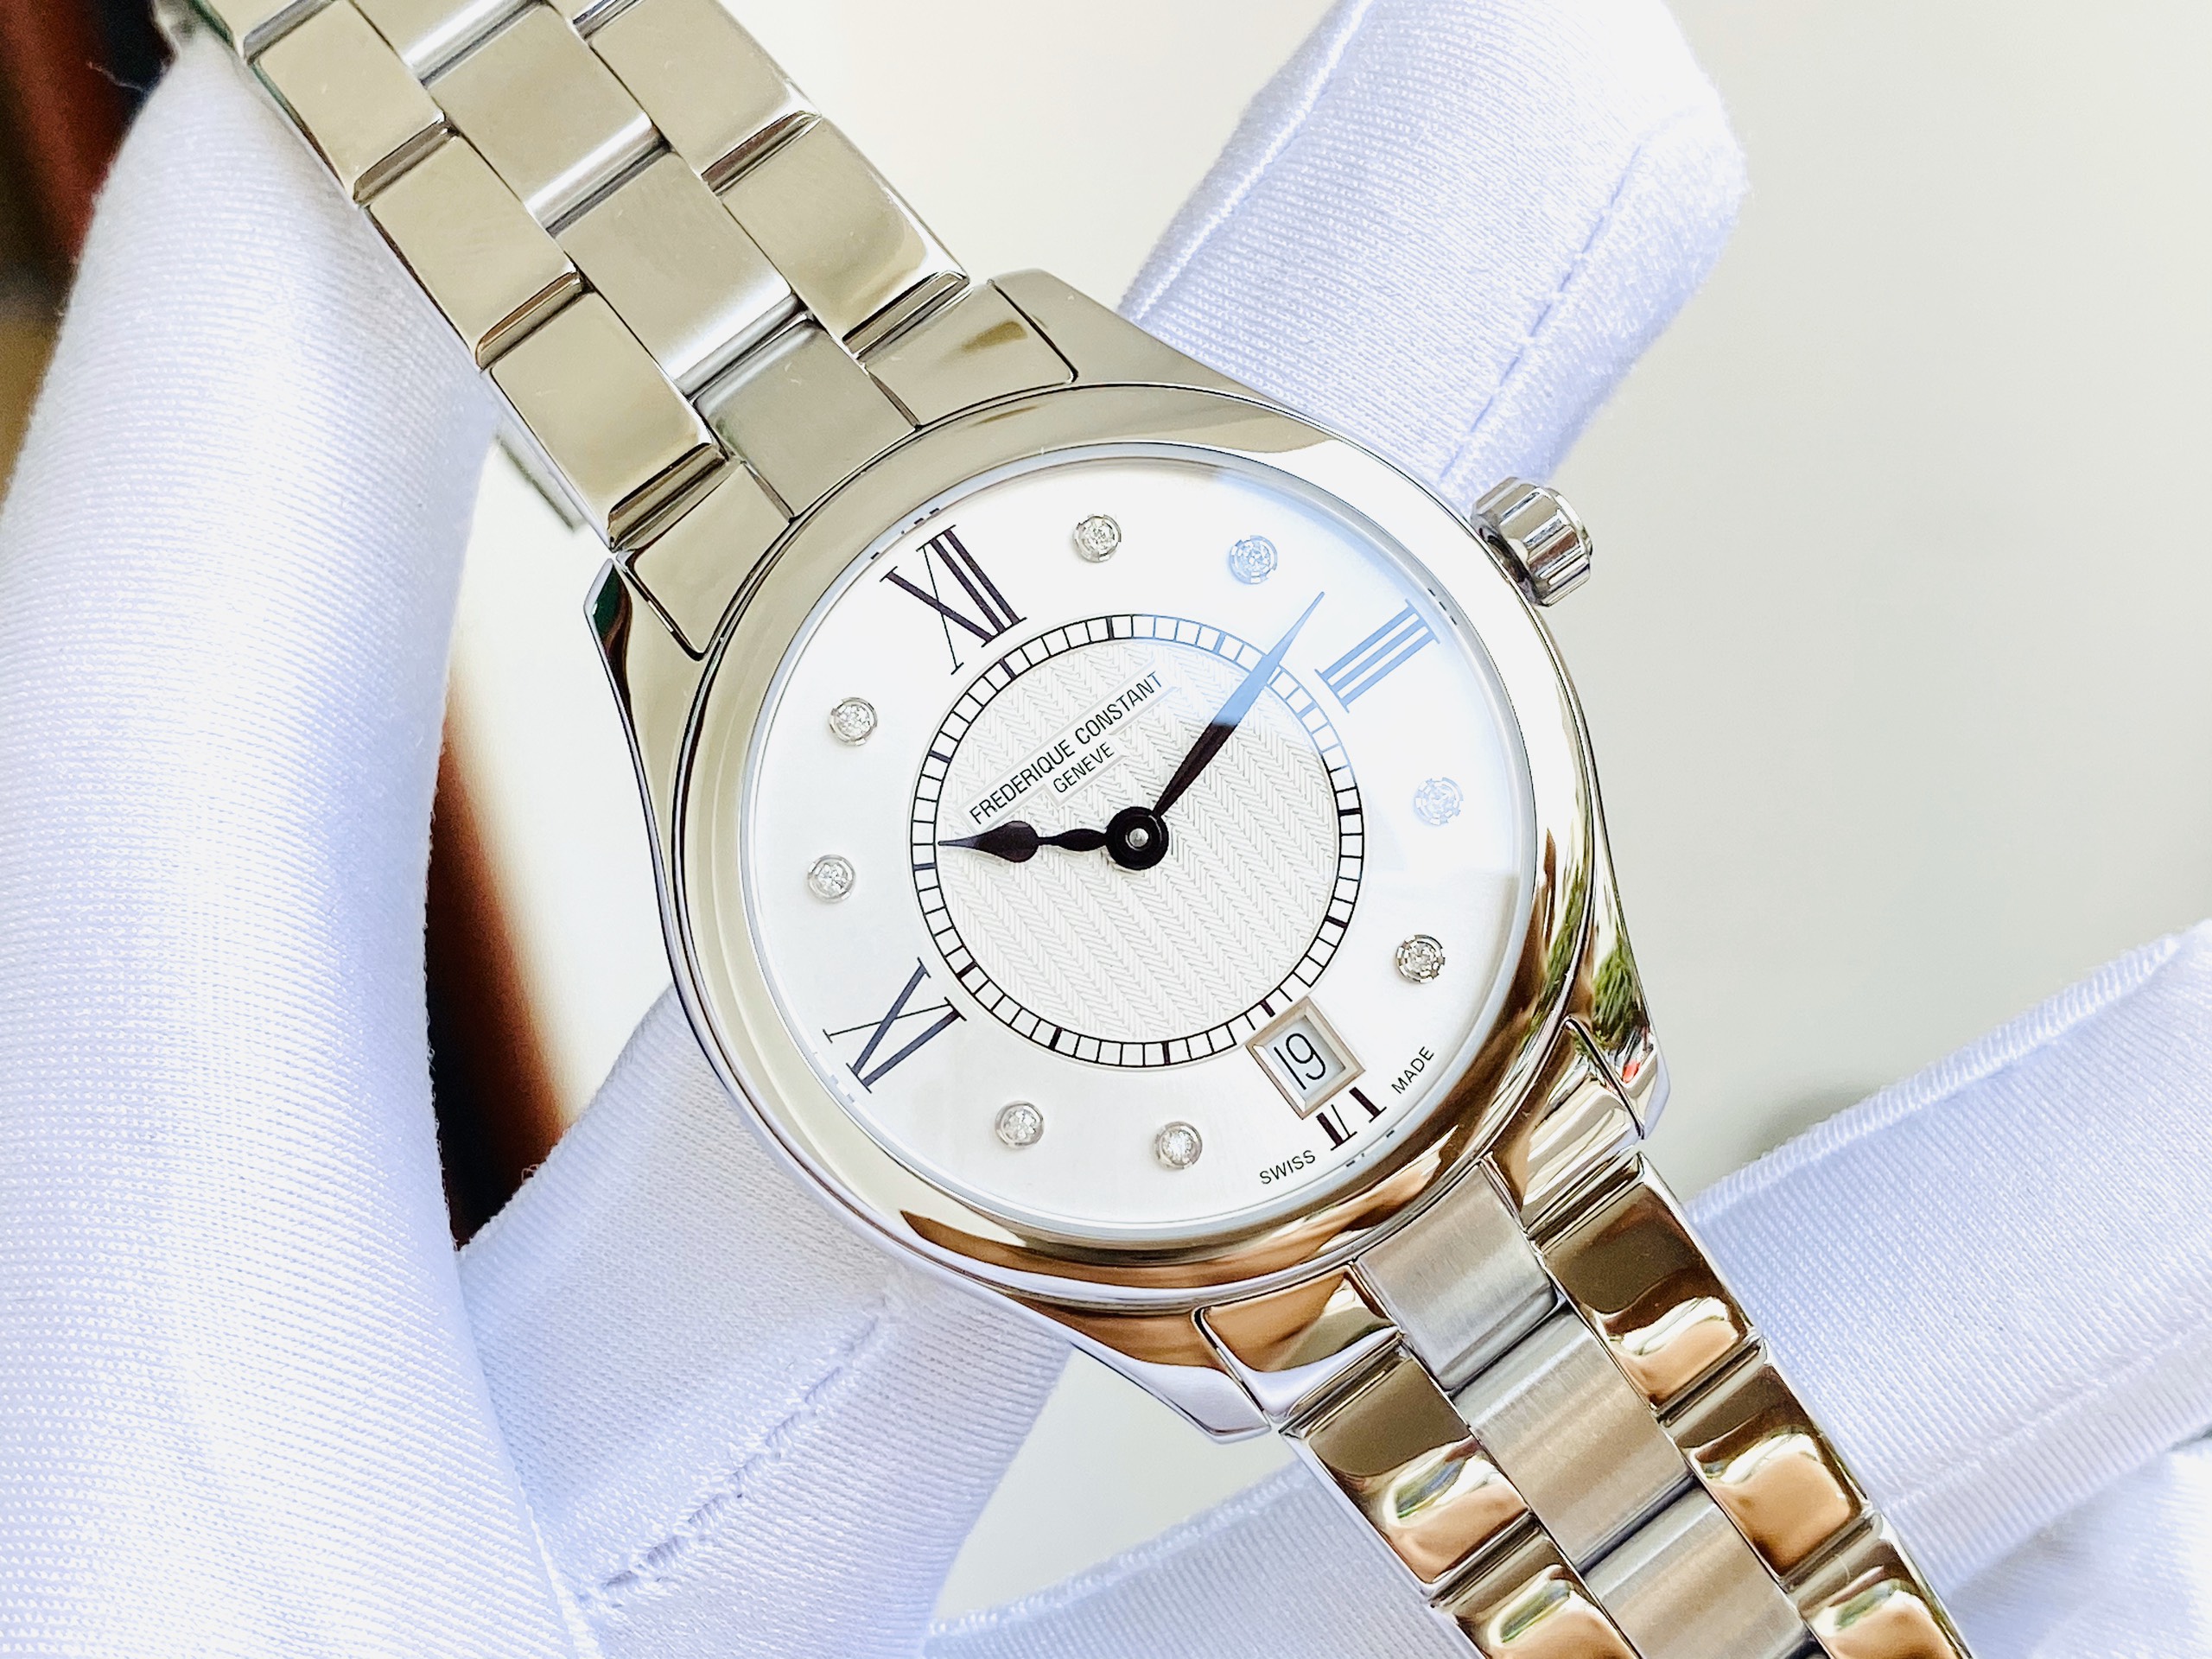 Địa chỉ thu mua đồng hồ Frederique Constant cũ chính hãng với giá cao tại  Hà Nội - Onetime.vn - Đồng hồ chính hãng